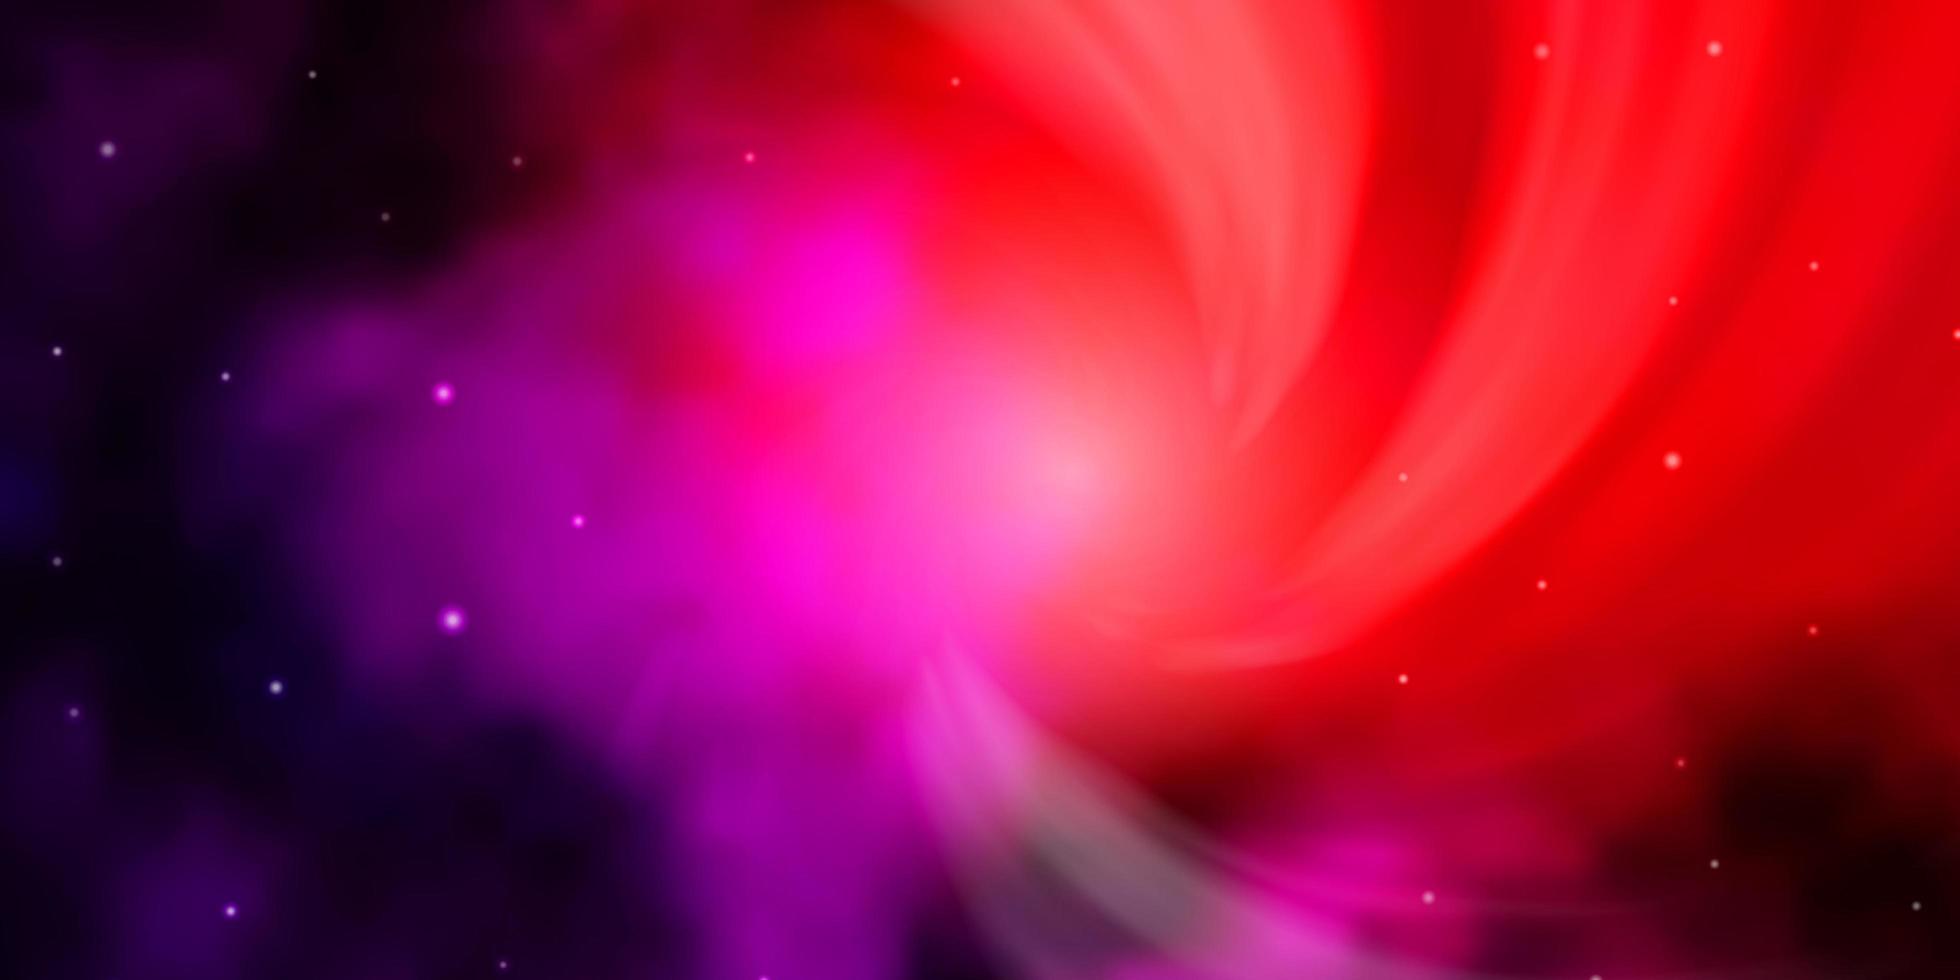 mörkrosa, röd vektorstruktur med vackra stjärnor. vektor